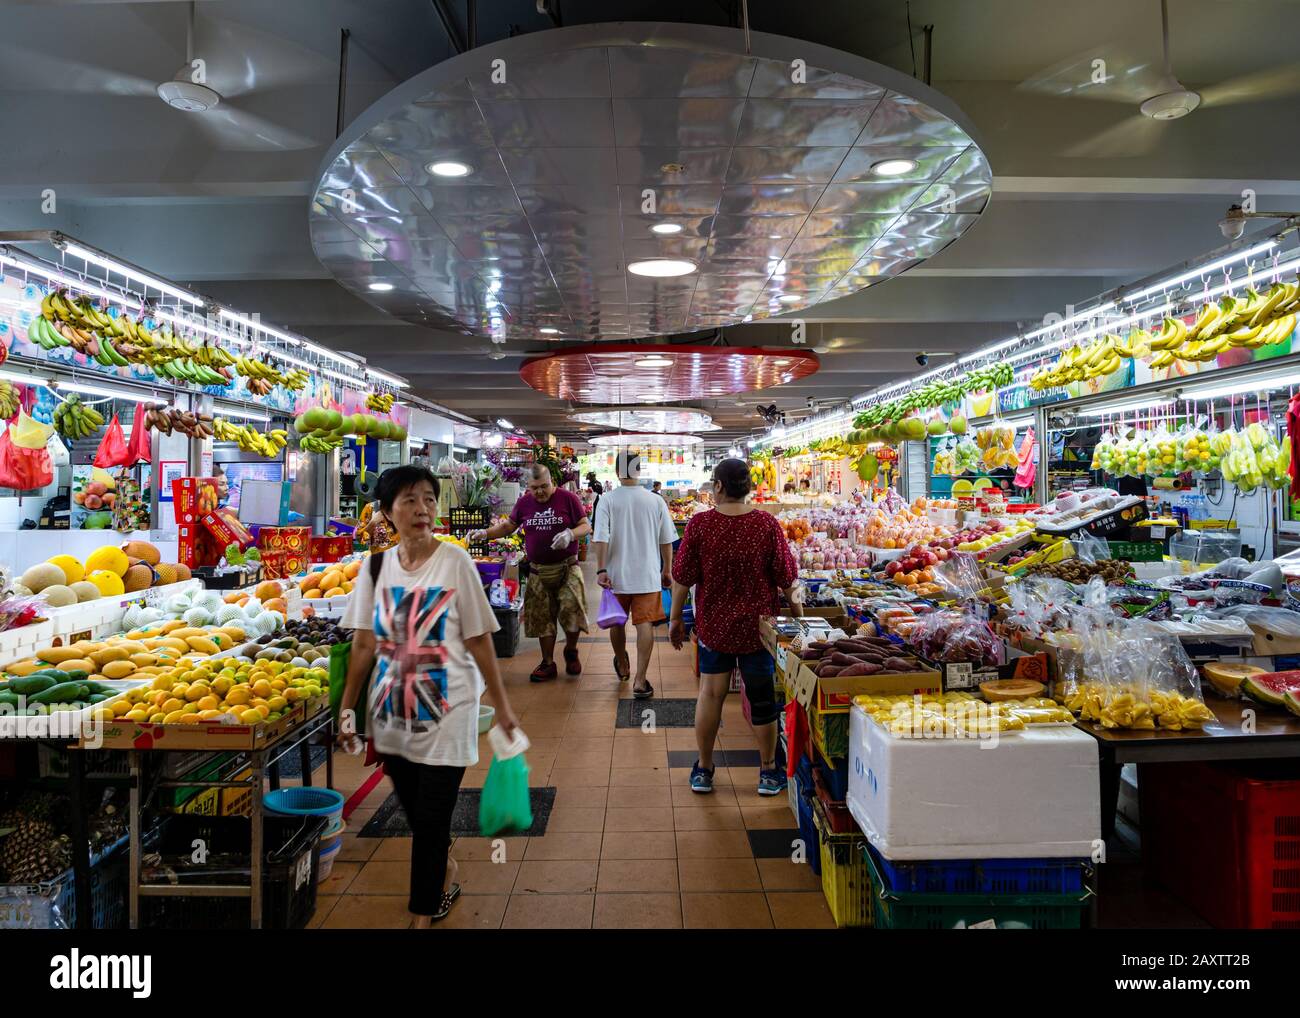 Singapour – 4 JANVIER 2020 – un client passe devant un stand de fruits sur le marché humide Ang Mo Kio à Singapour, en Asie du Sud-est. Fruits tropicaux et épicerie Banque D'Images